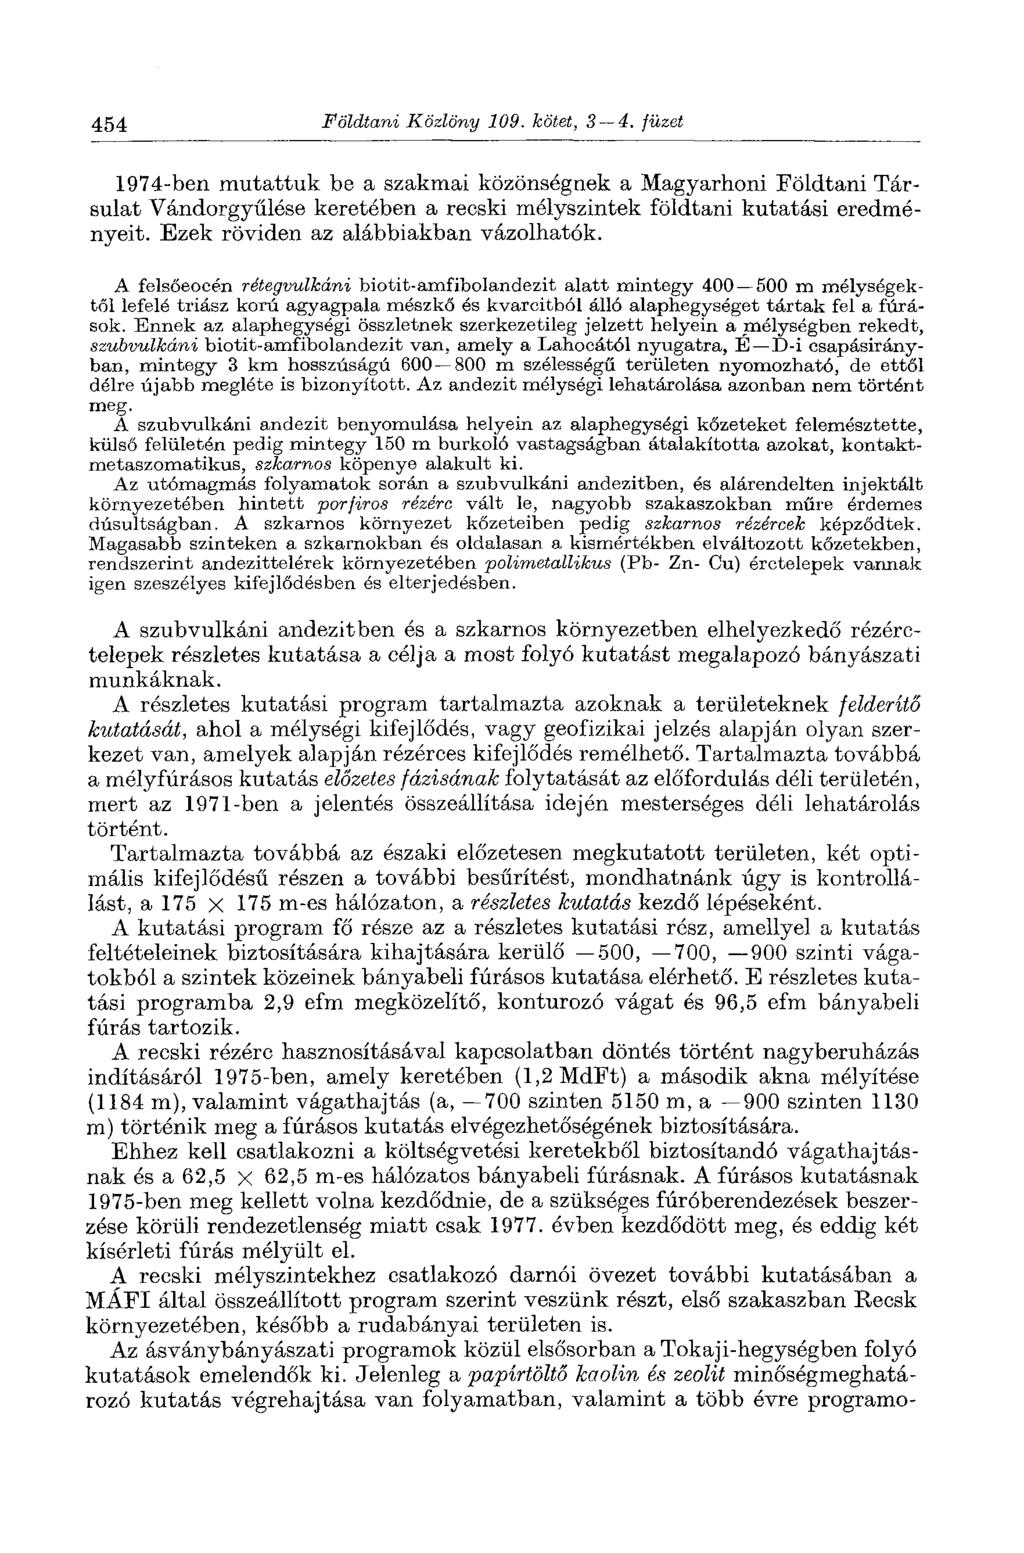 454 Földtani Közlöny 109. kötet, 3 4. füzet 1974-ben mutattuk be a szakmai közönségnek a Magyarhoni Földtani Társulat Vándorgyűlése keretében a recski mélyszintek földtani kutatási eredményeit.